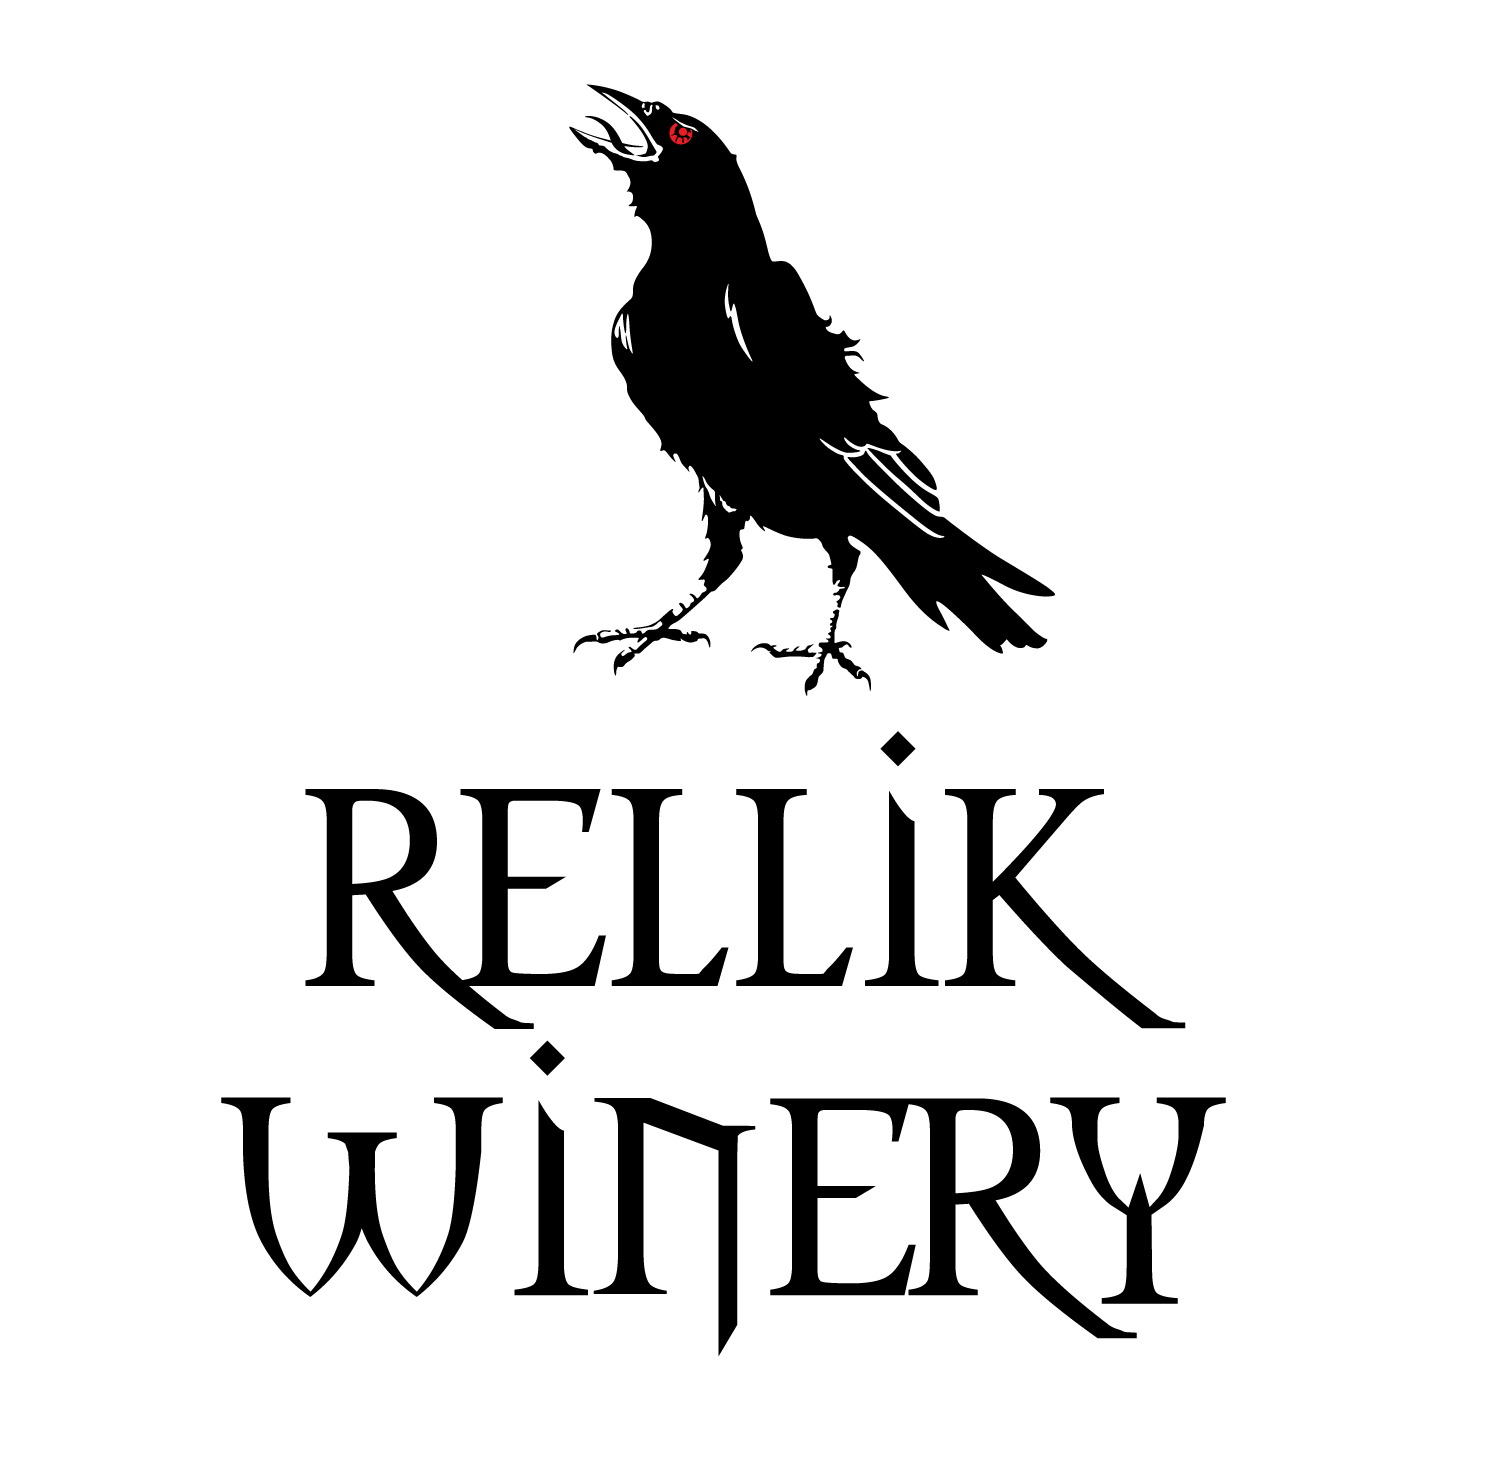 Rellik Winery in Jacksonville, Oregon